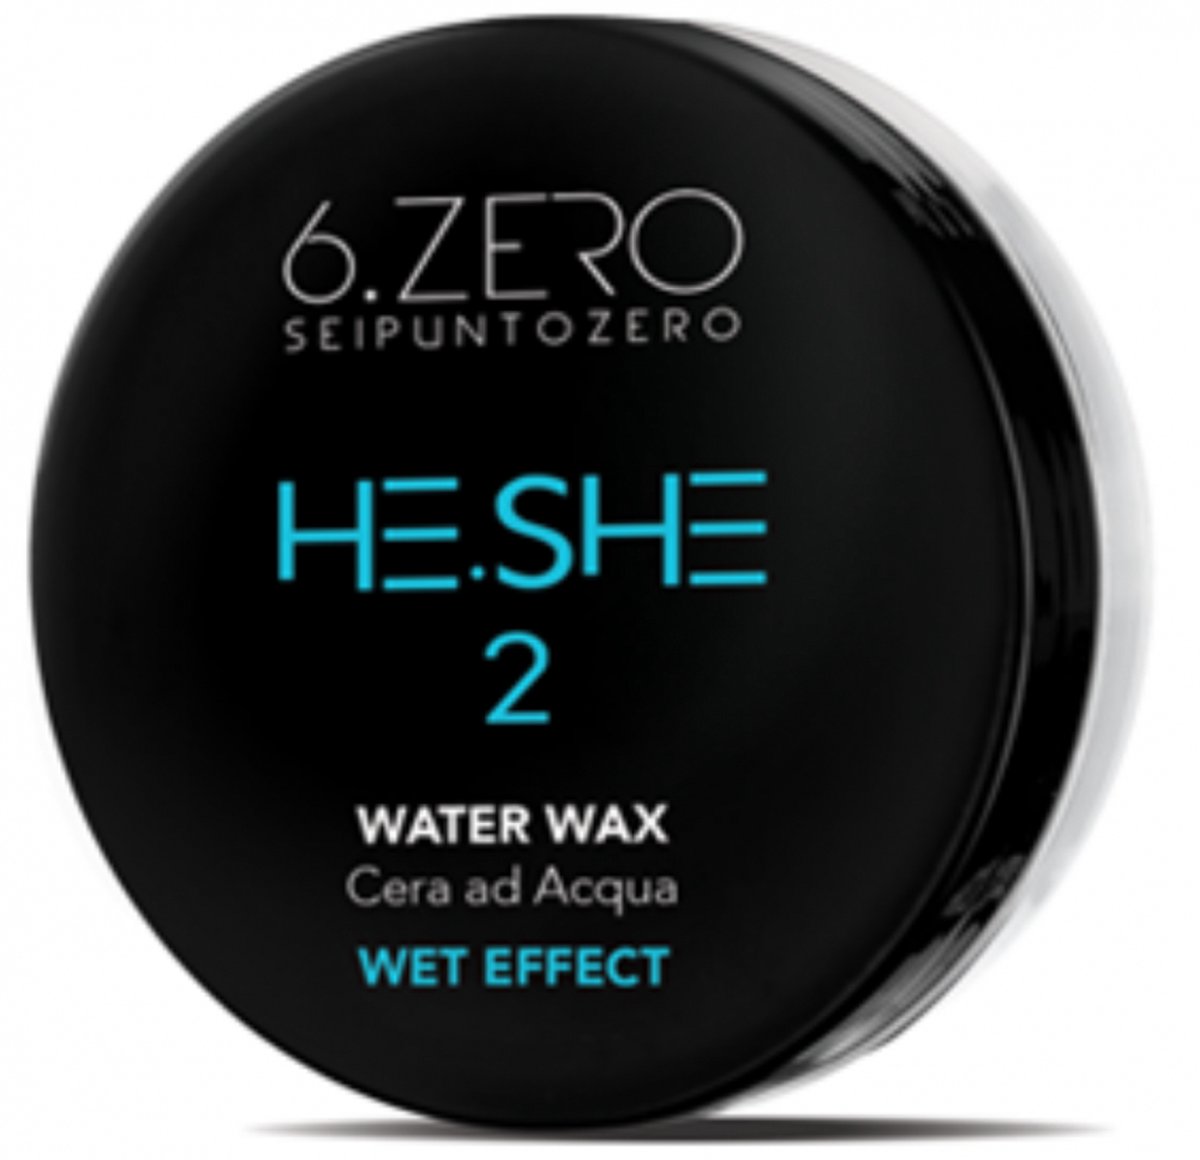 Water Wax He-she 6 Zéro